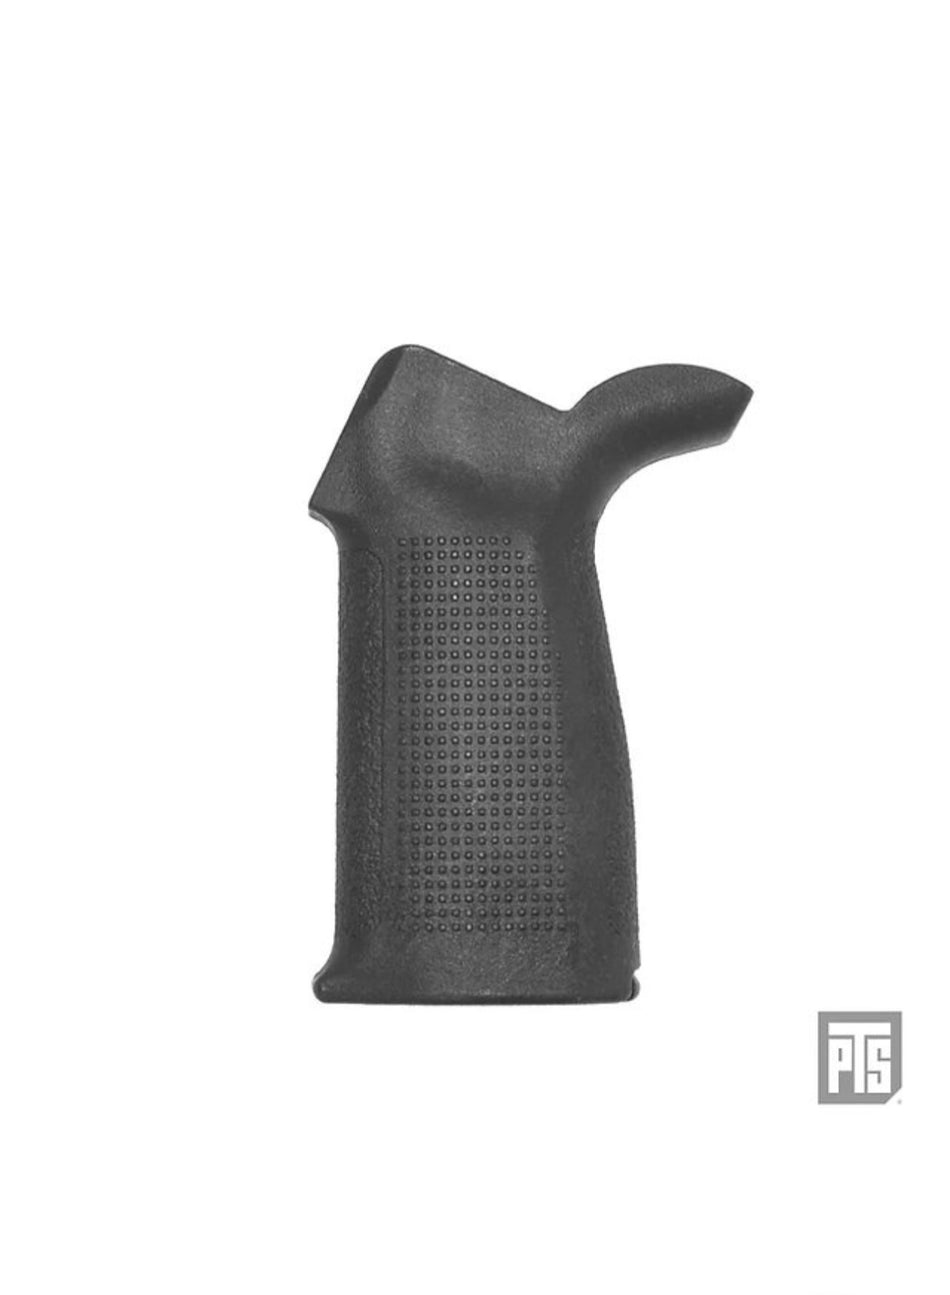 PTS Enhanced Polymer M4 Grip (EPG) For AEG/ERG